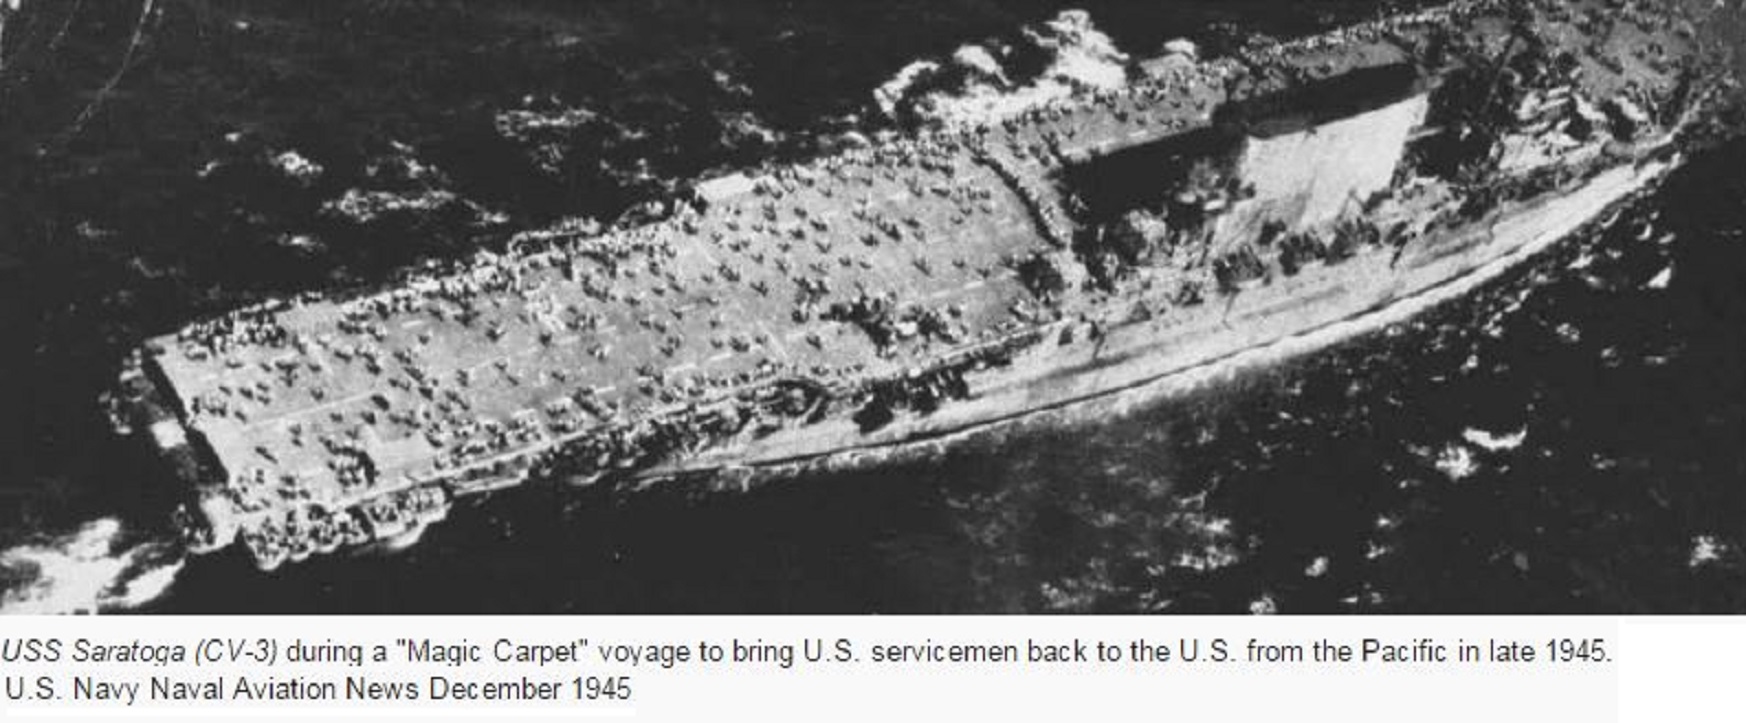 USS SARAGOTA MAGIC CARPET PETIT-DIEULOIS